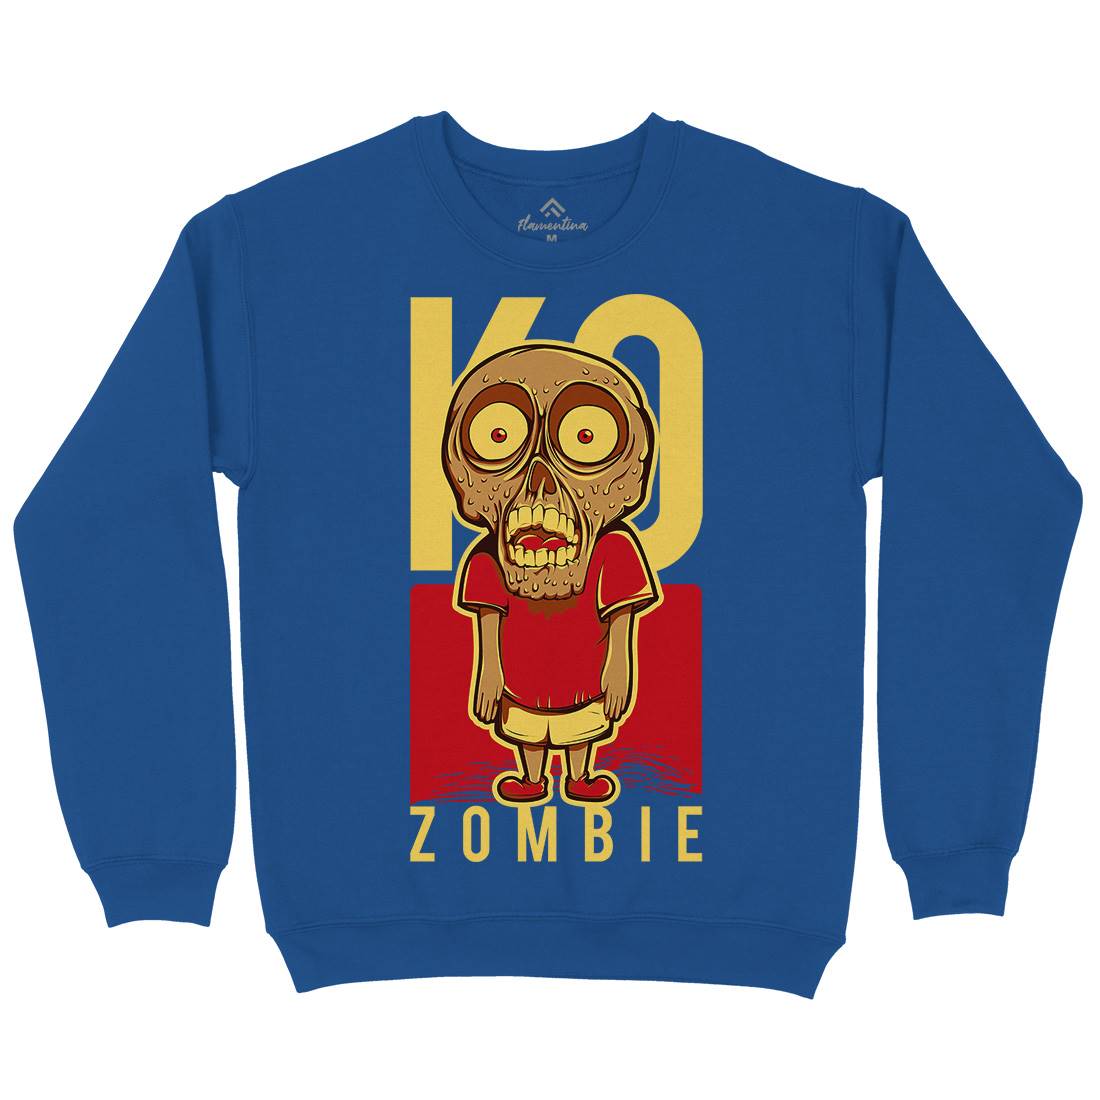 Little Zombie Kids Crew Neck Sweatshirt Funny D637